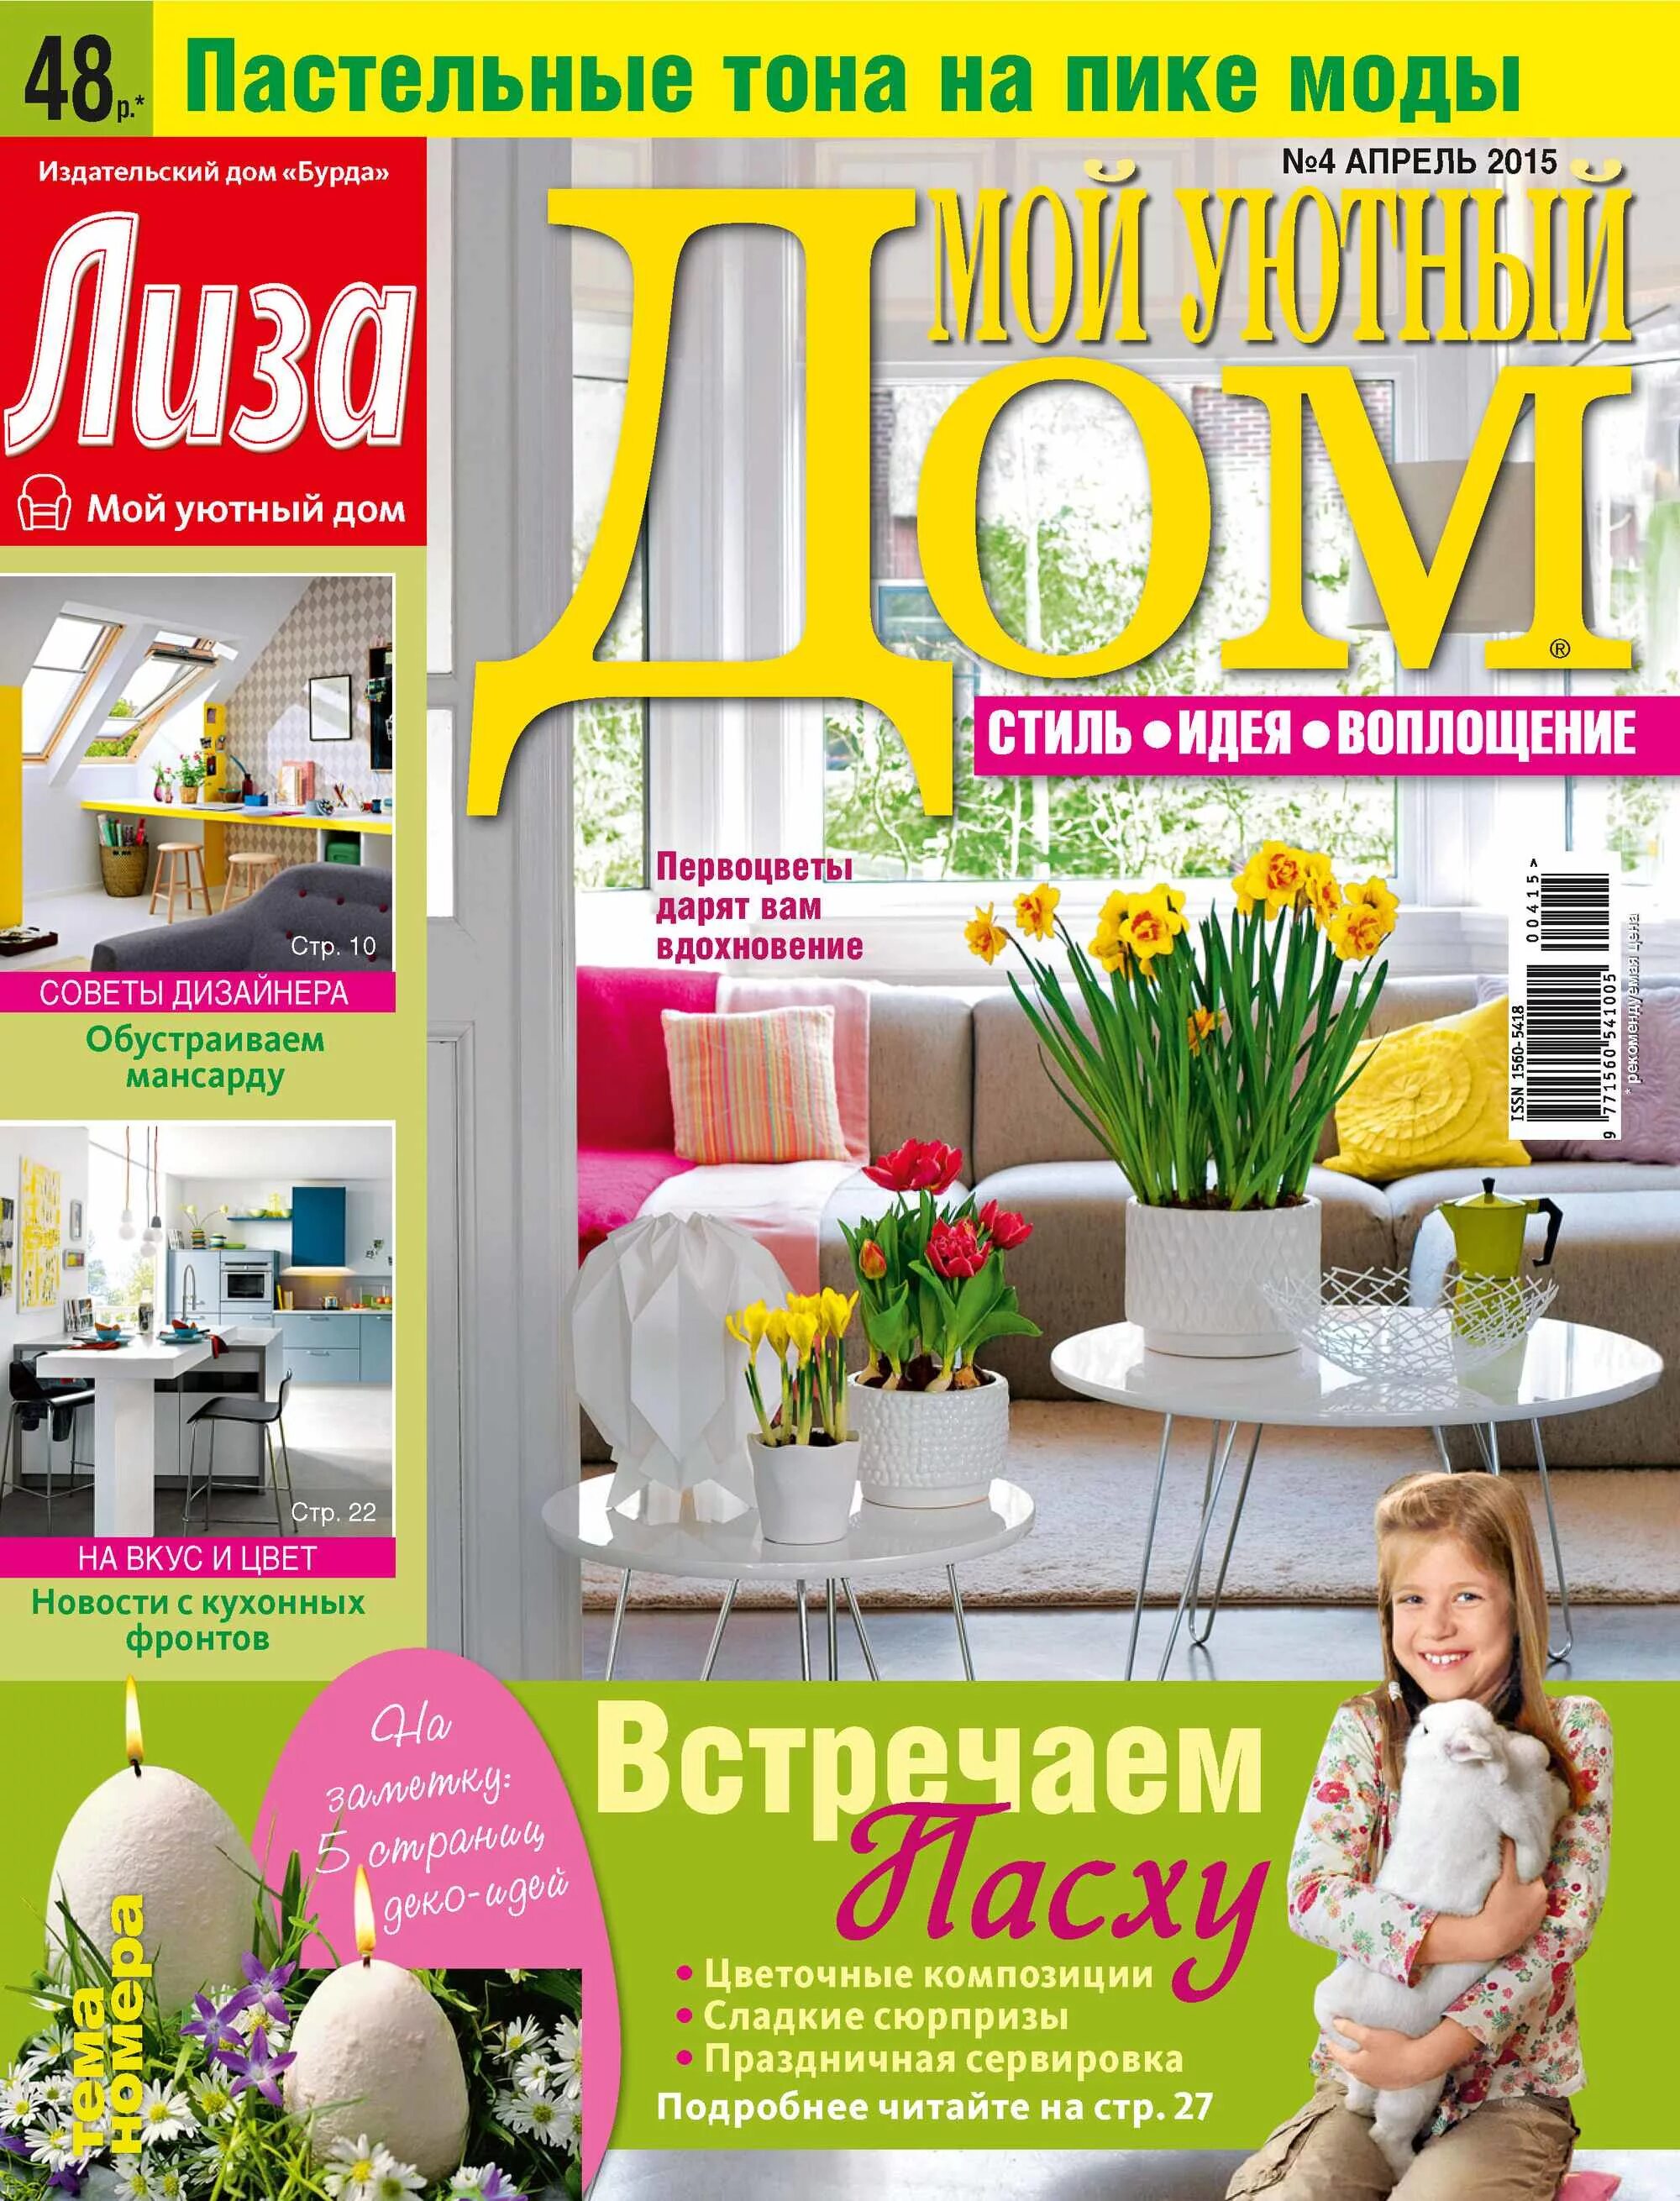 Домашний 4 апреля. Журнал уютный дом. Мой уютный дом журнал. Журналы о доме и уюте.